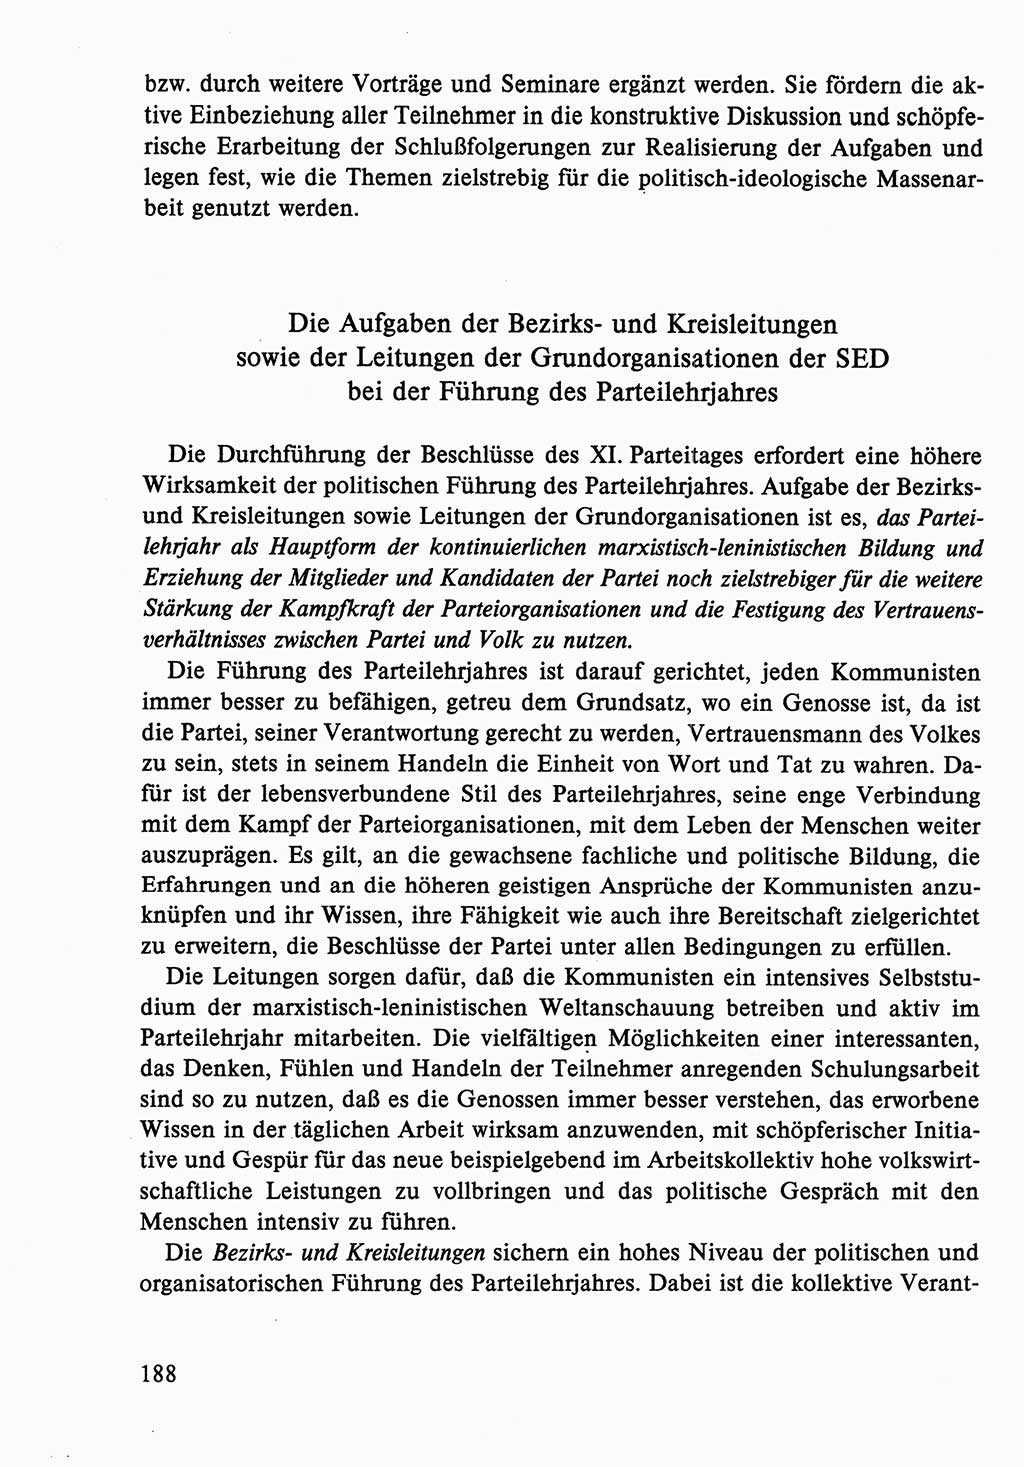 Dokumente der Sozialistischen Einheitspartei Deutschlands (SED) [Deutsche Demokratische Republik (DDR)] 1986-1987, Seite 188 (Dok. SED DDR 1986-1987, S. 188)